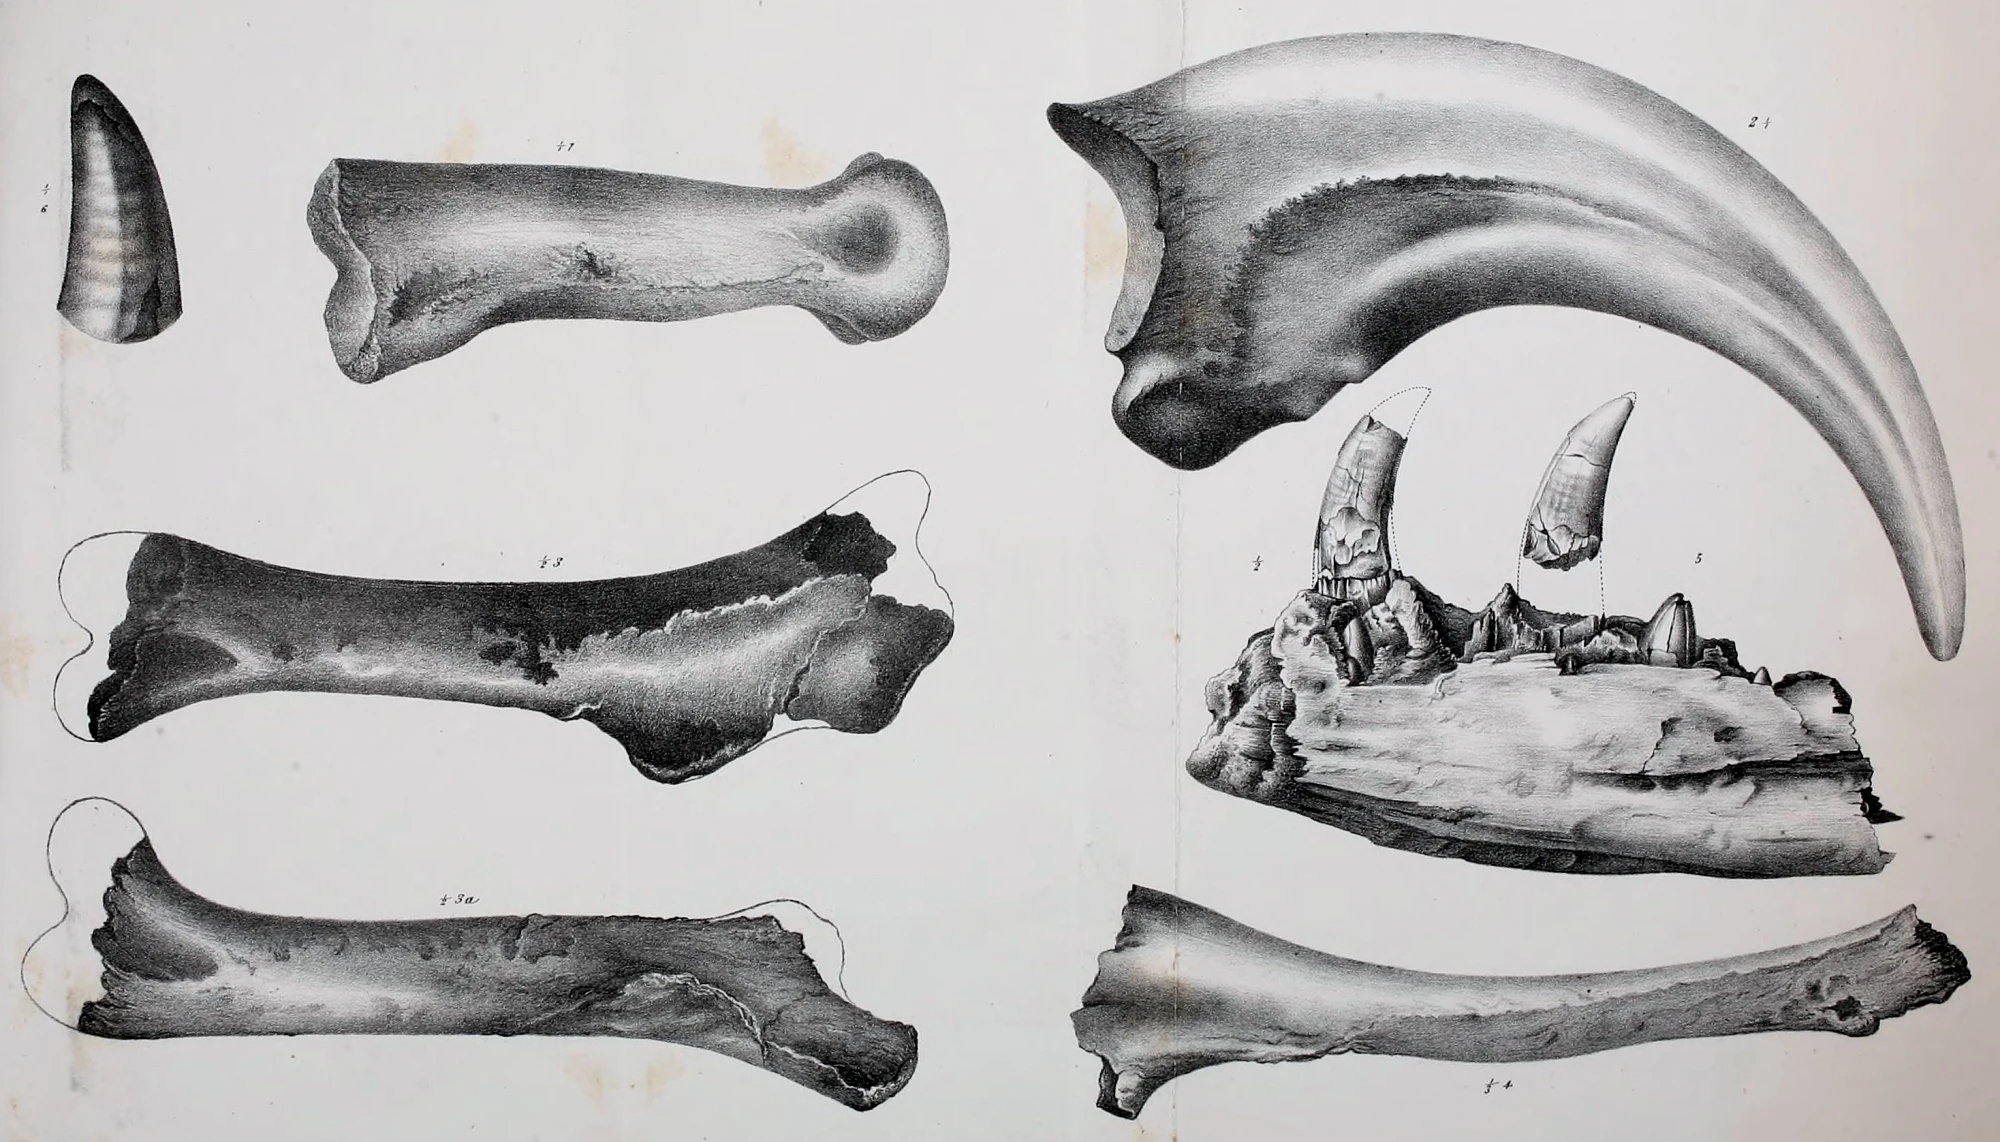 根据目前的唯一部分身体骨骼，伤龙（即暴风龙）身长被估计约7.5米，臀部高度为1.8米，重量约1.5公吨[1]。伤龙拥有相当长的手臂，与三根指爪，类似它们的近亲始暴龙。每个指爪都有长达8吋的指爪。